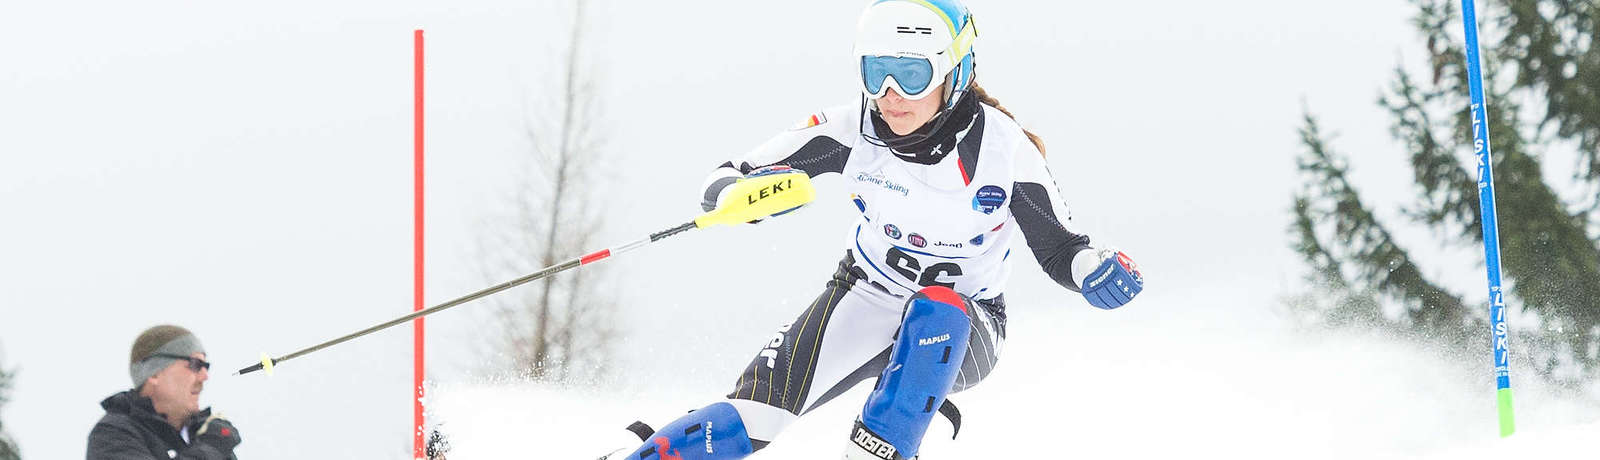 Anna-Maria Rieder umfährt eine Slalom-Stange